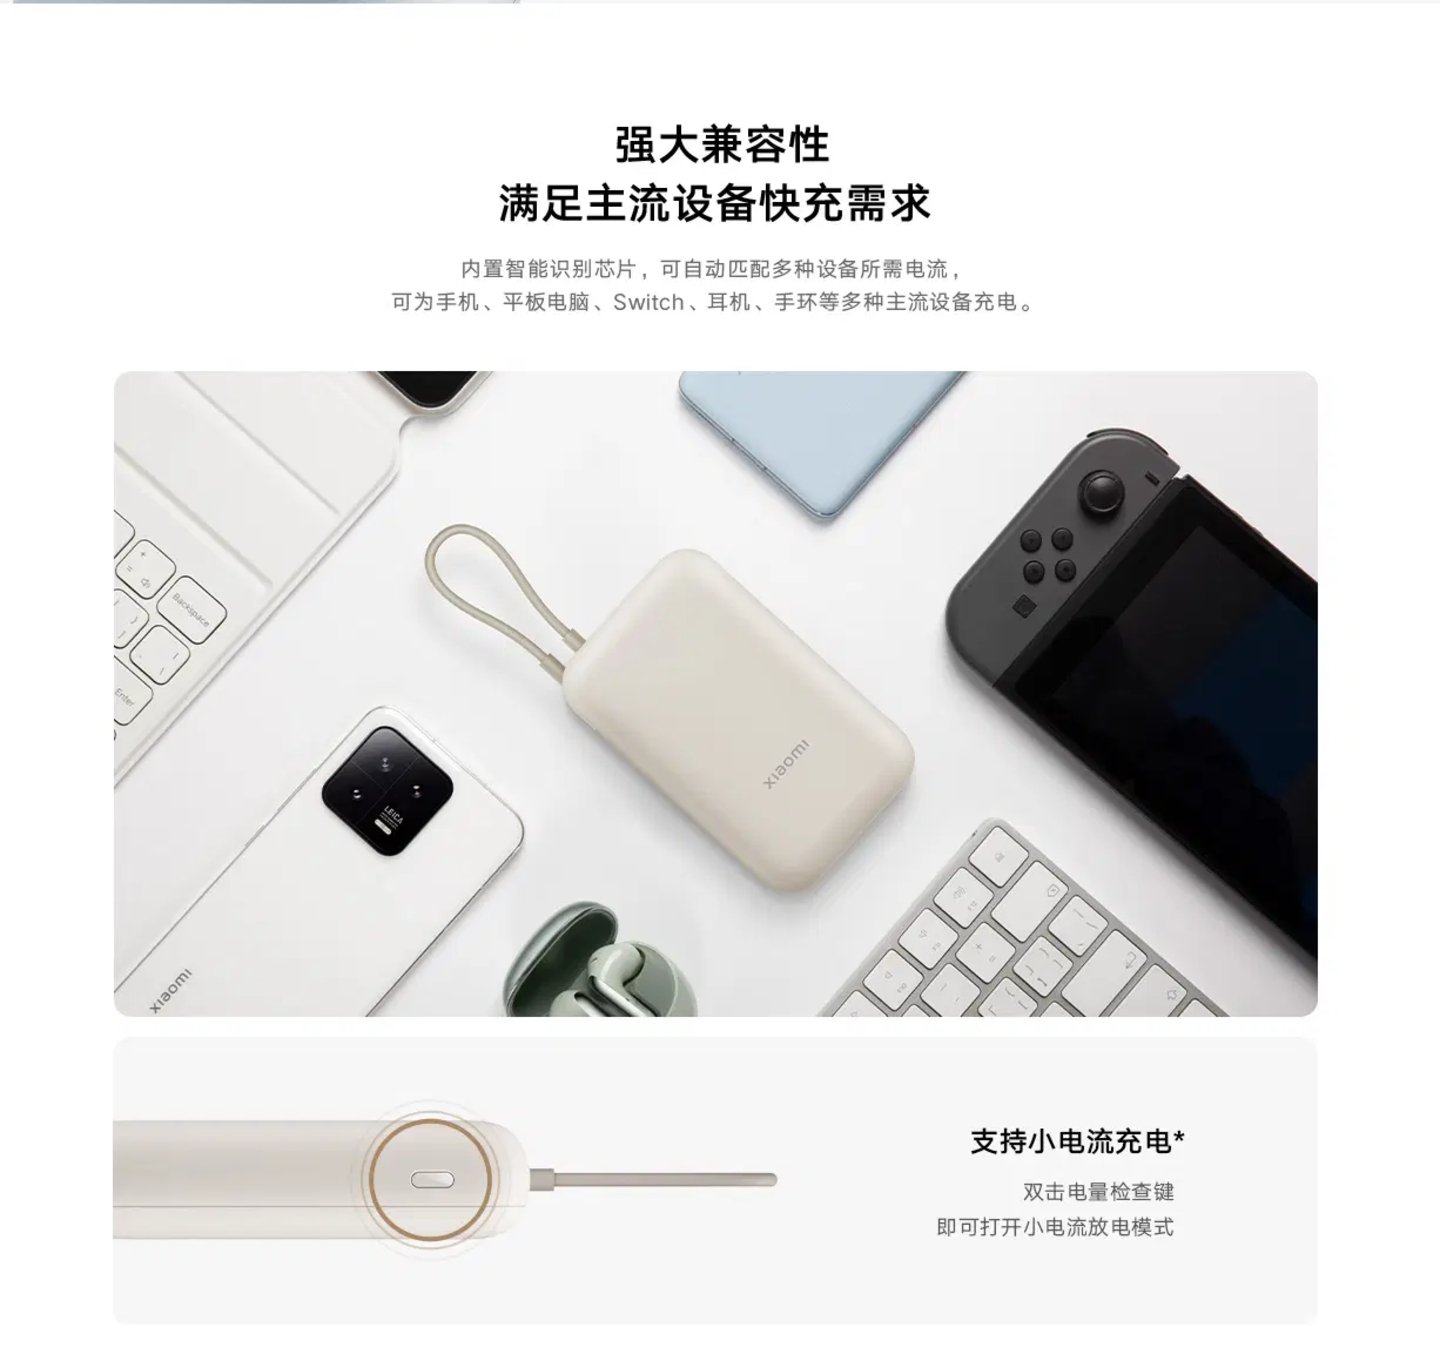 Una fotografía promocional de la Xiaomi Powerbank